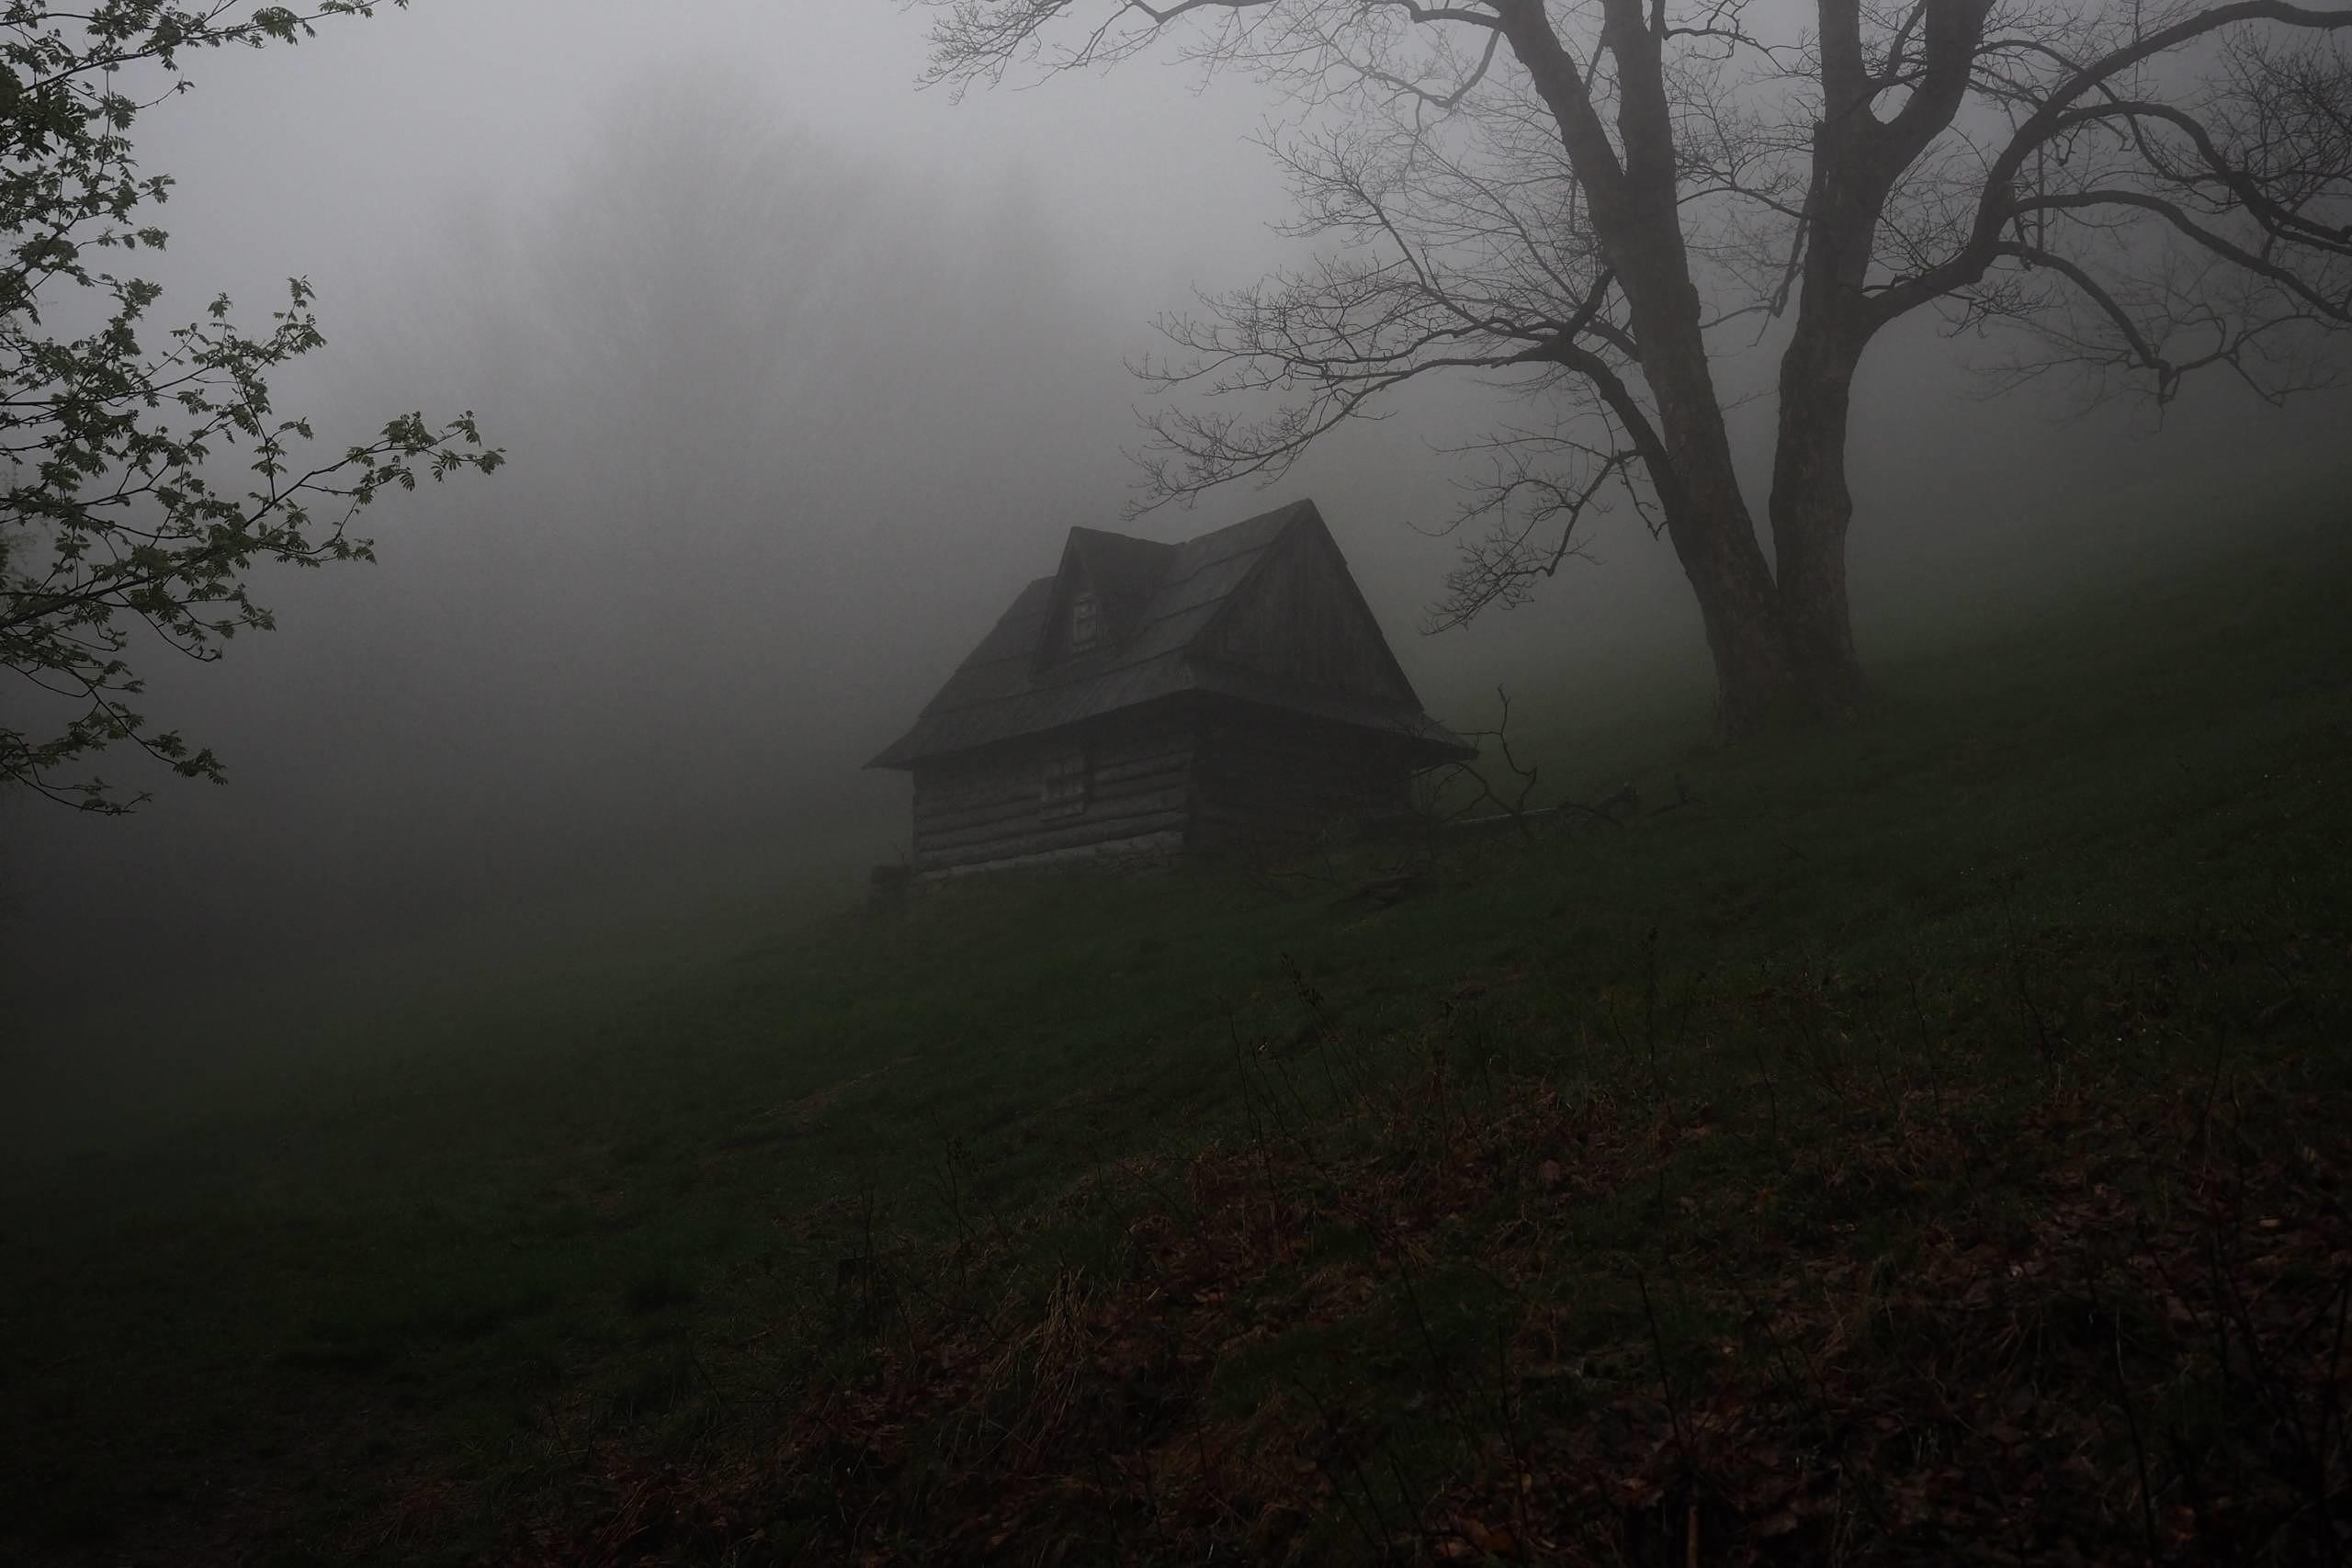 Haus im Nebel, eine Szenerie wie aus einem Horrorfilm